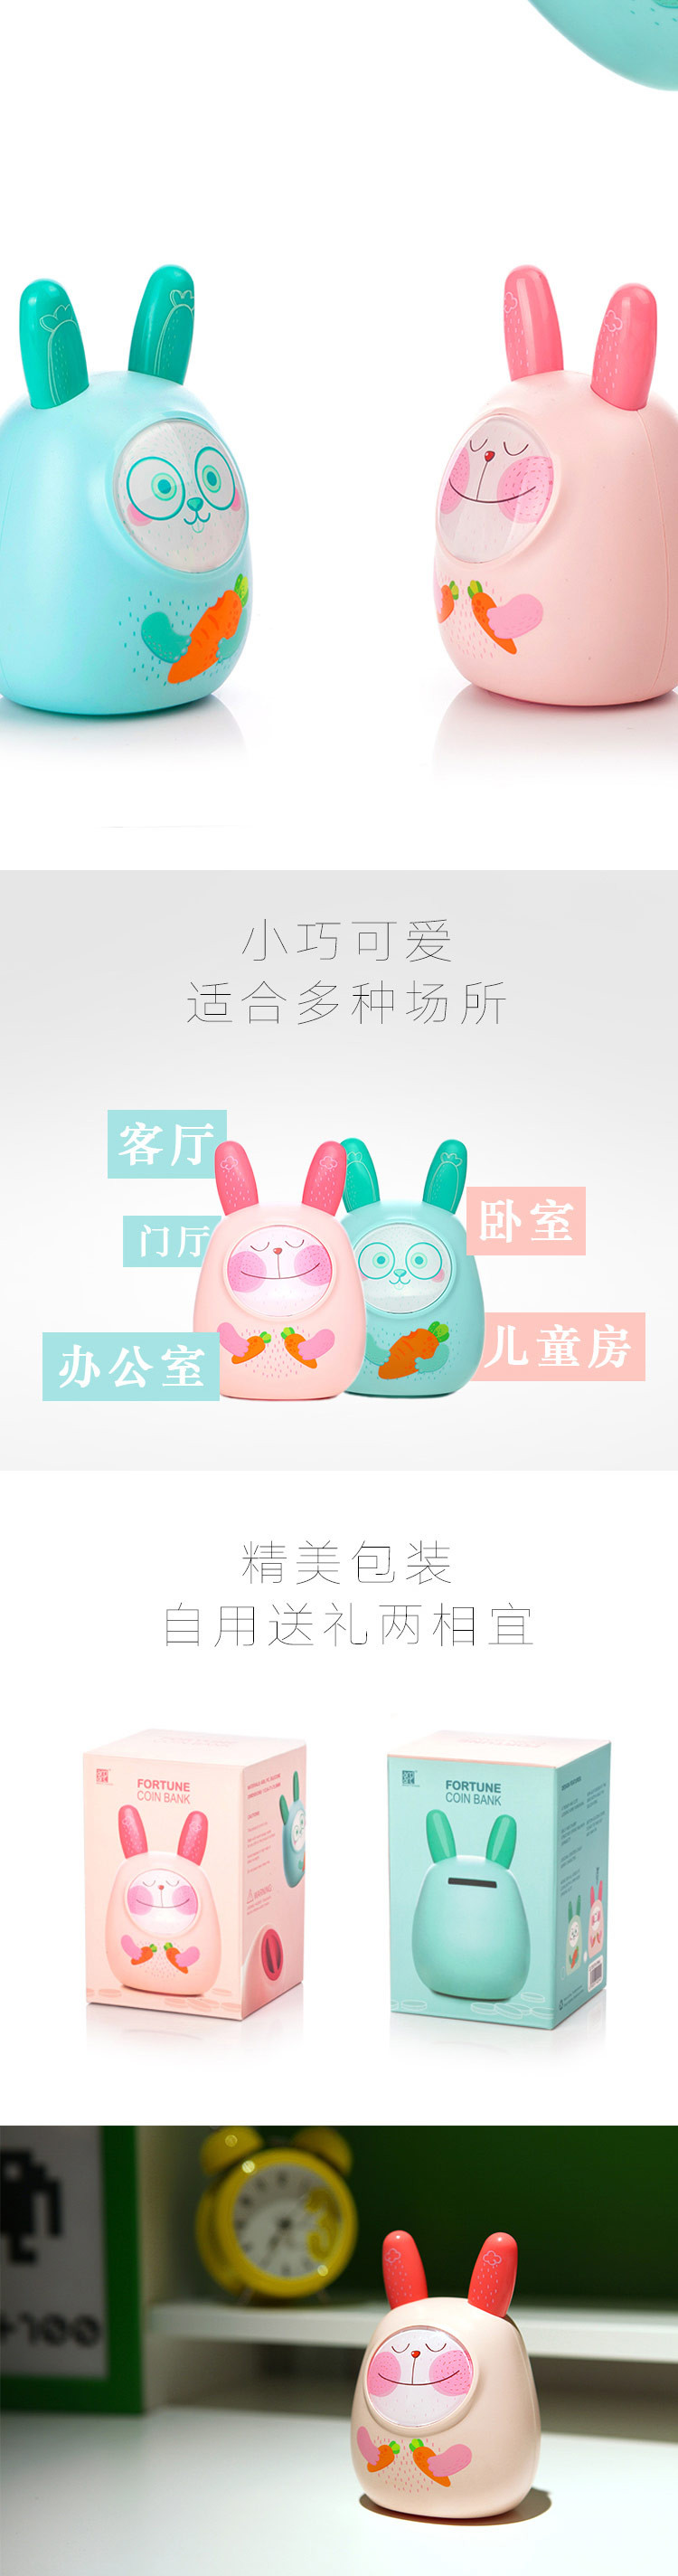 台湾Artiart创意零钱罐 兔爷存钱罐 储蓄钱罐 粉红 均码 CUTE070-PINK